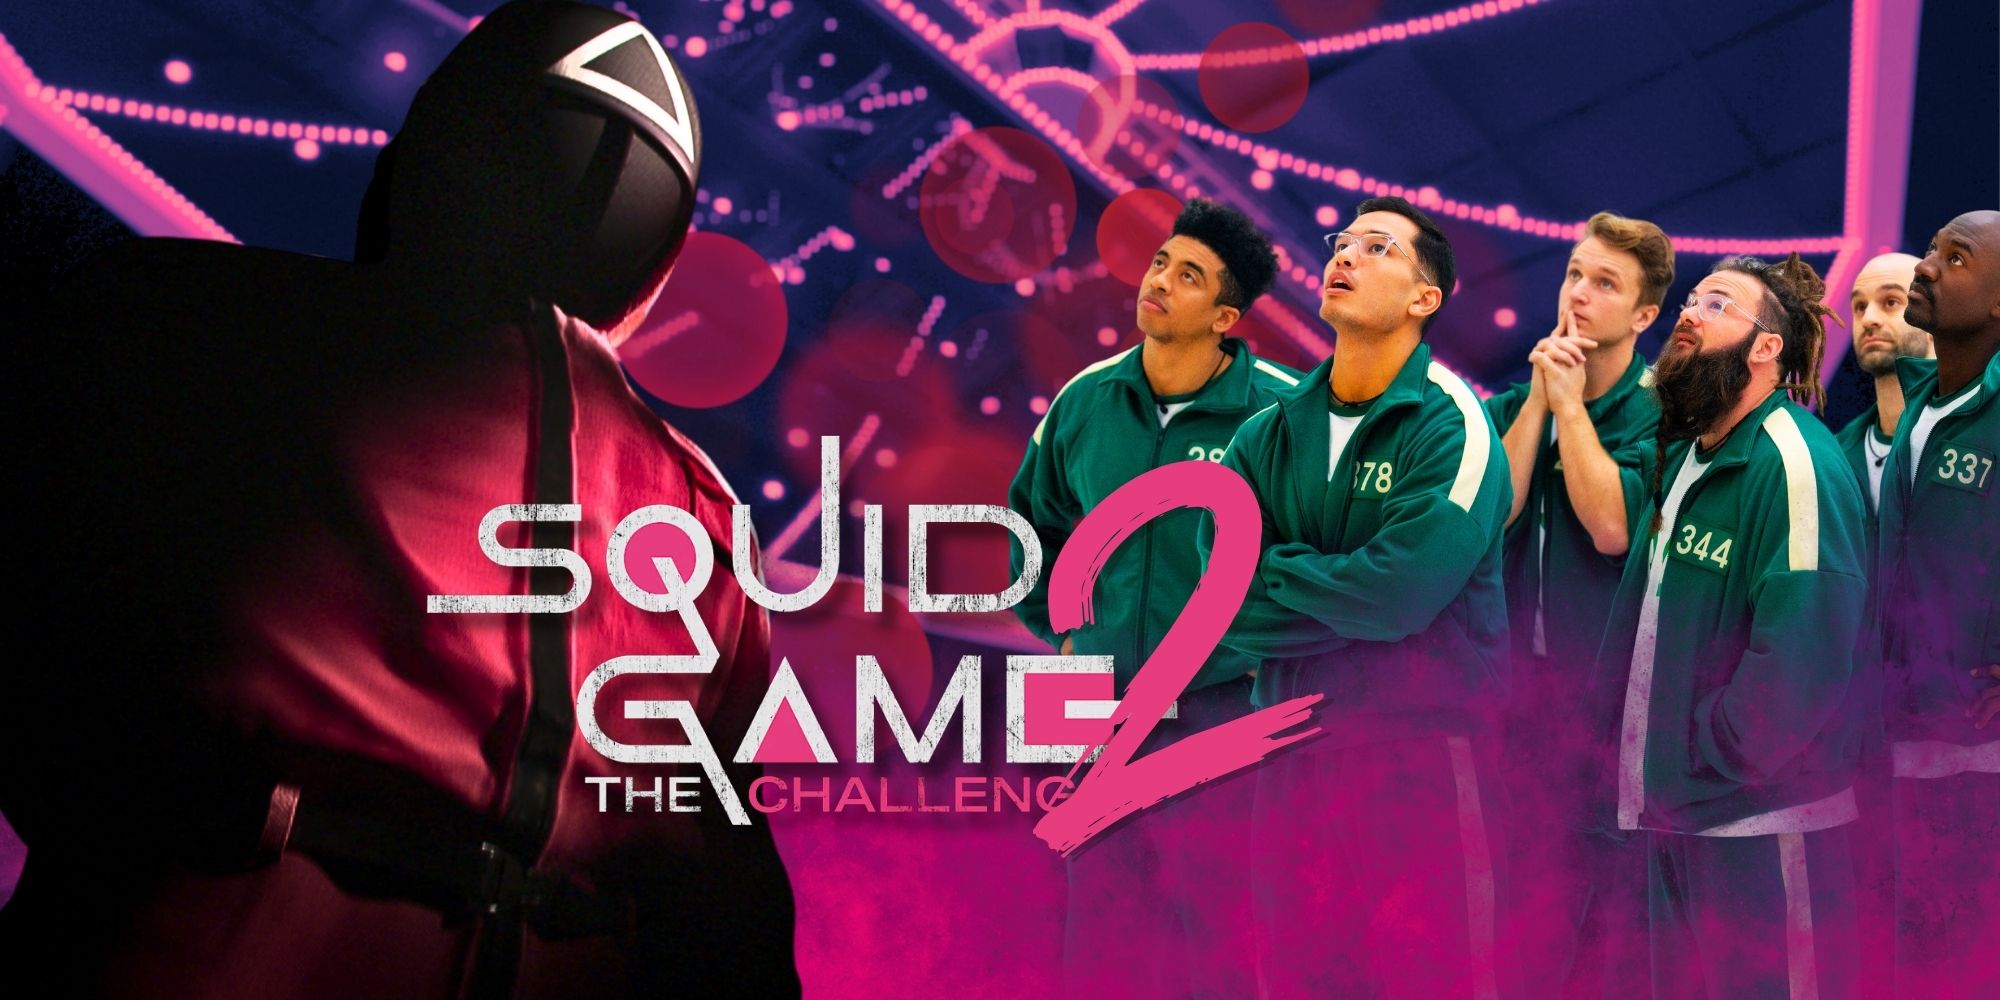 Squid Game: The Challenge Season 2 probablemente no sucederá por esta razón